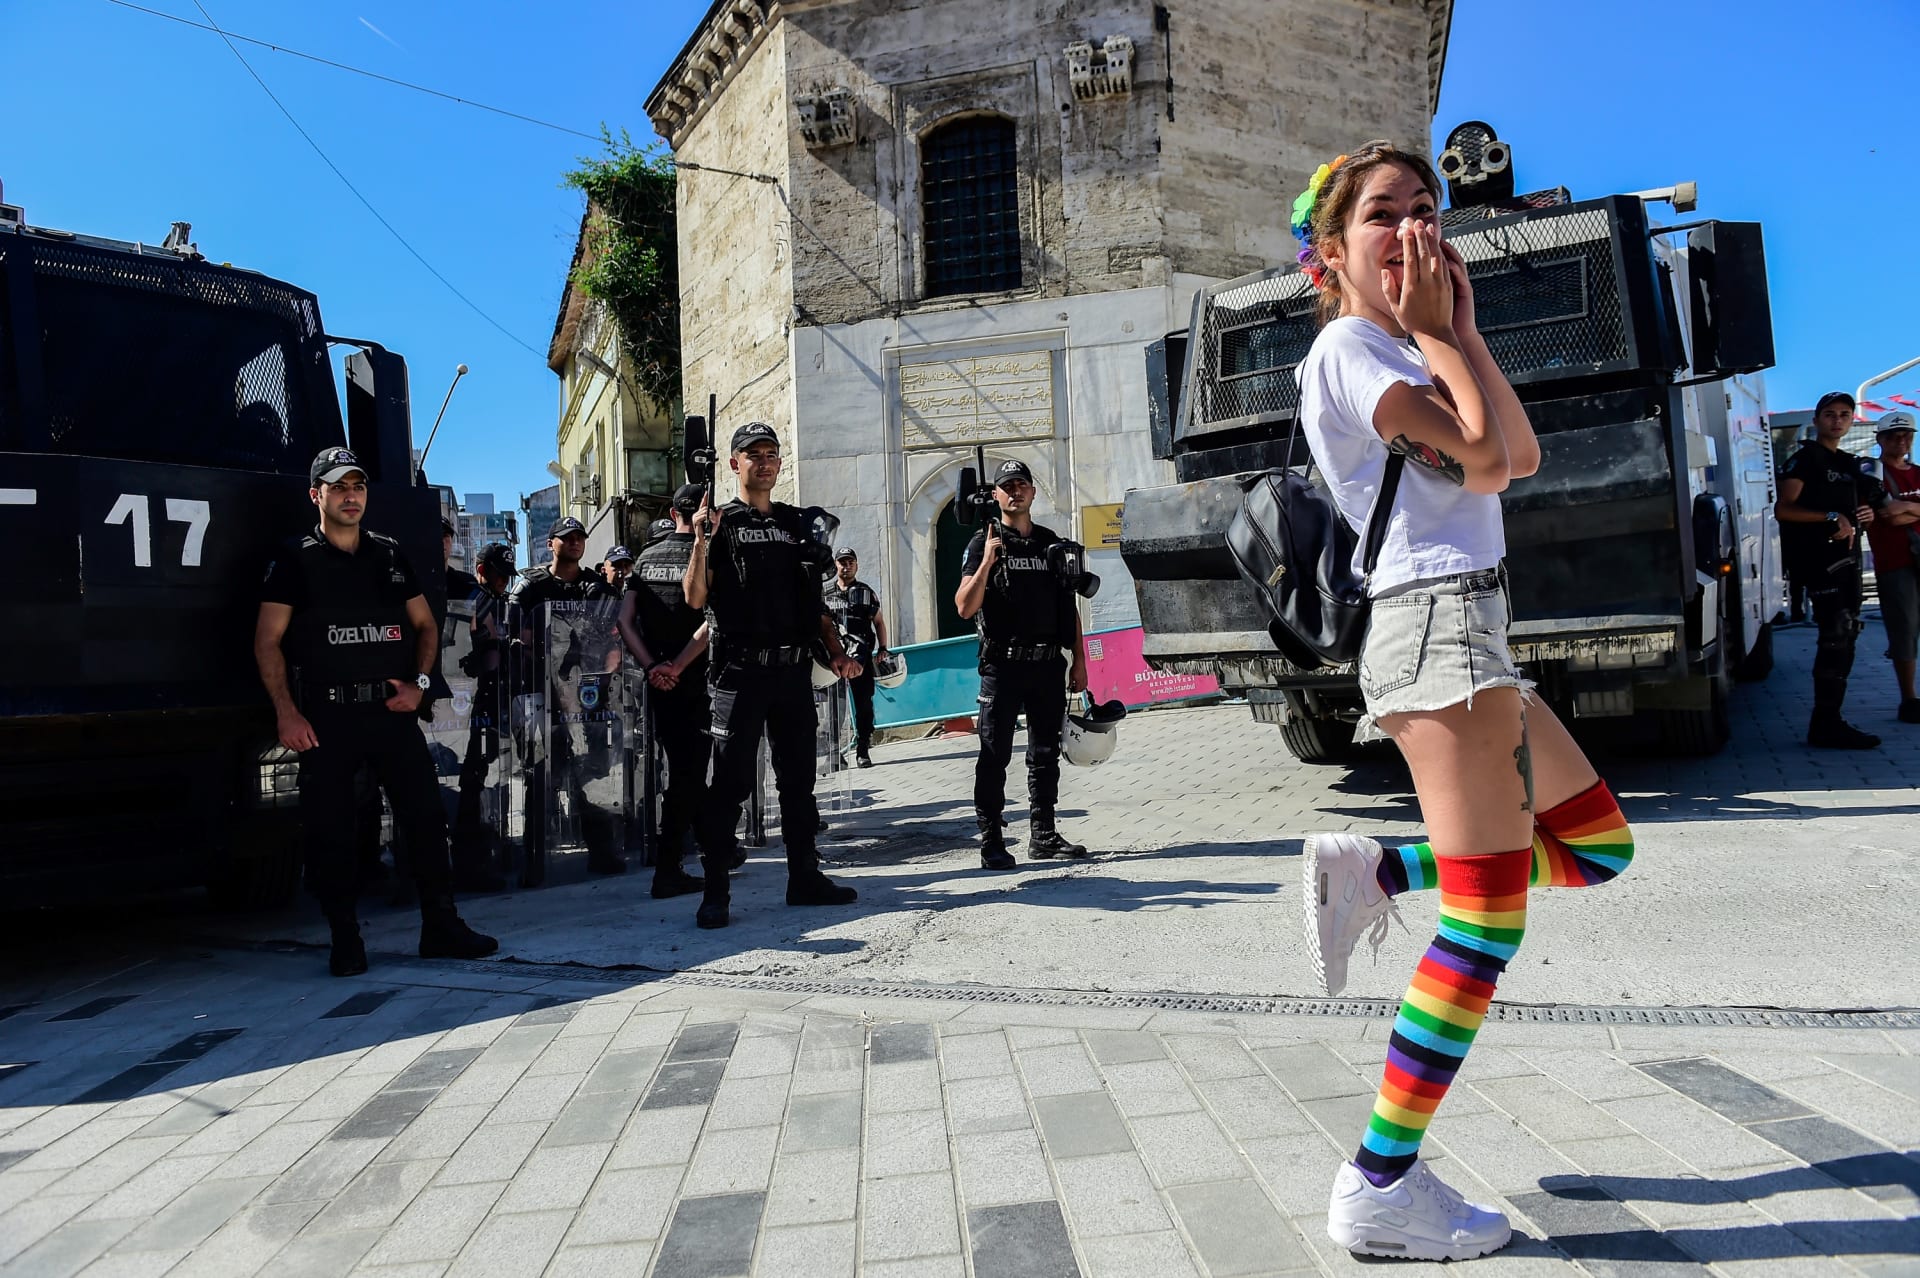 تركيا.. الشرطة تفرق مسيرات "فخر" للمثليين في إسطنبول